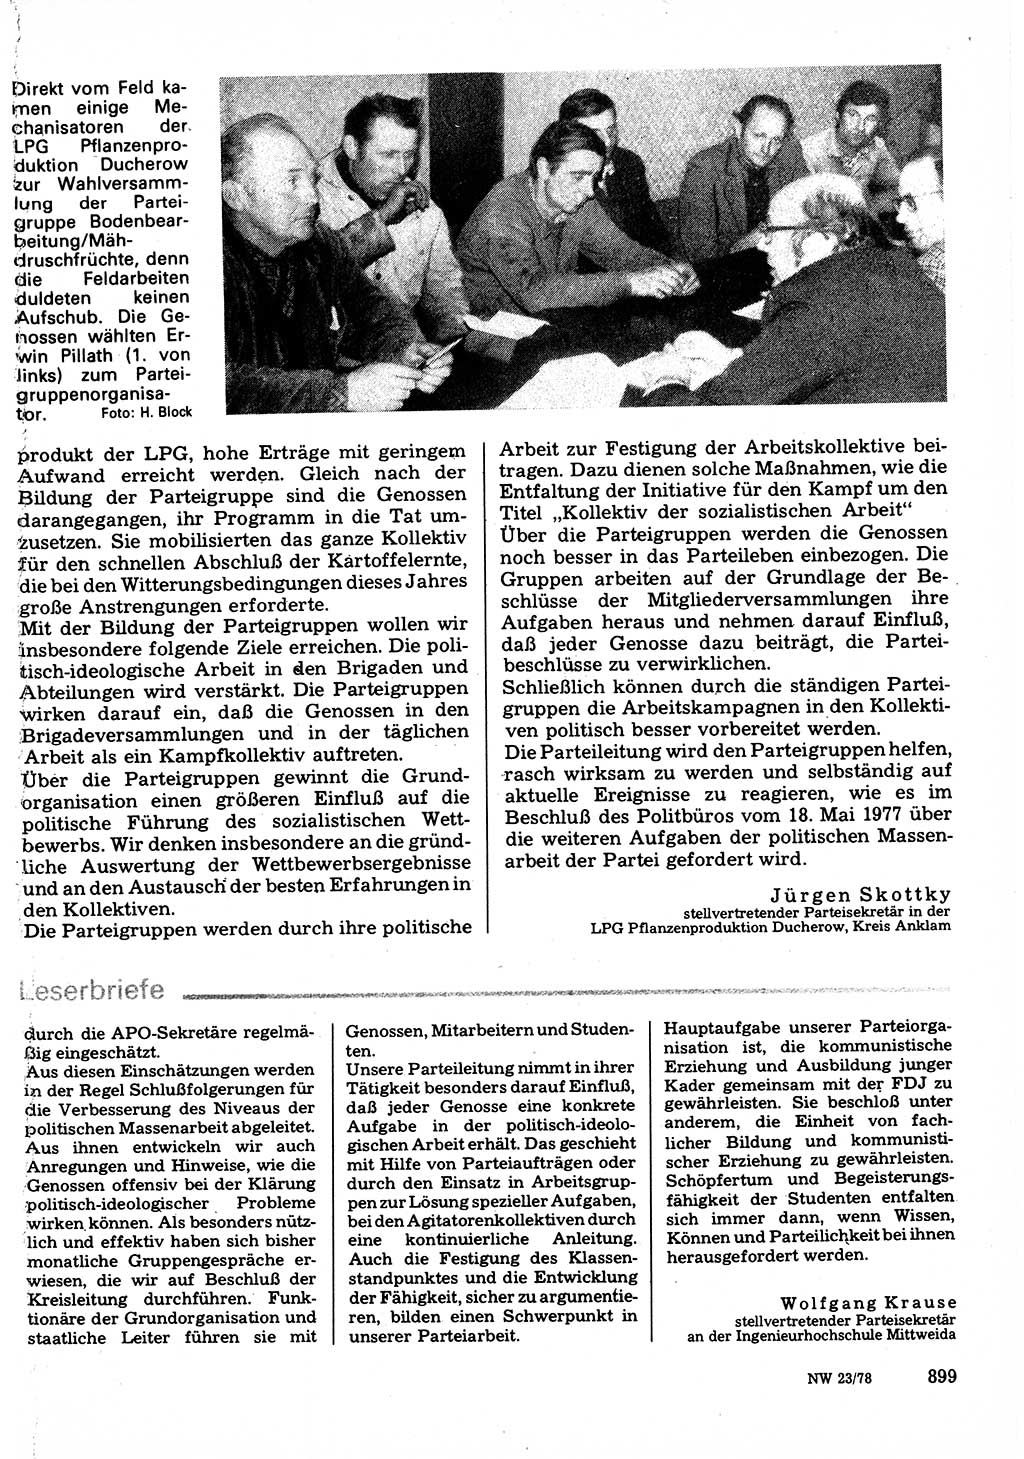 Neuer Weg (NW), Organ des Zentralkomitees (ZK) der SED (Sozialistische Einheitspartei Deutschlands) für Fragen des Parteilebens, 33. Jahrgang [Deutsche Demokratische Republik (DDR)] 1978, Seite 899 (NW ZK SED DDR 1978, S. 899)